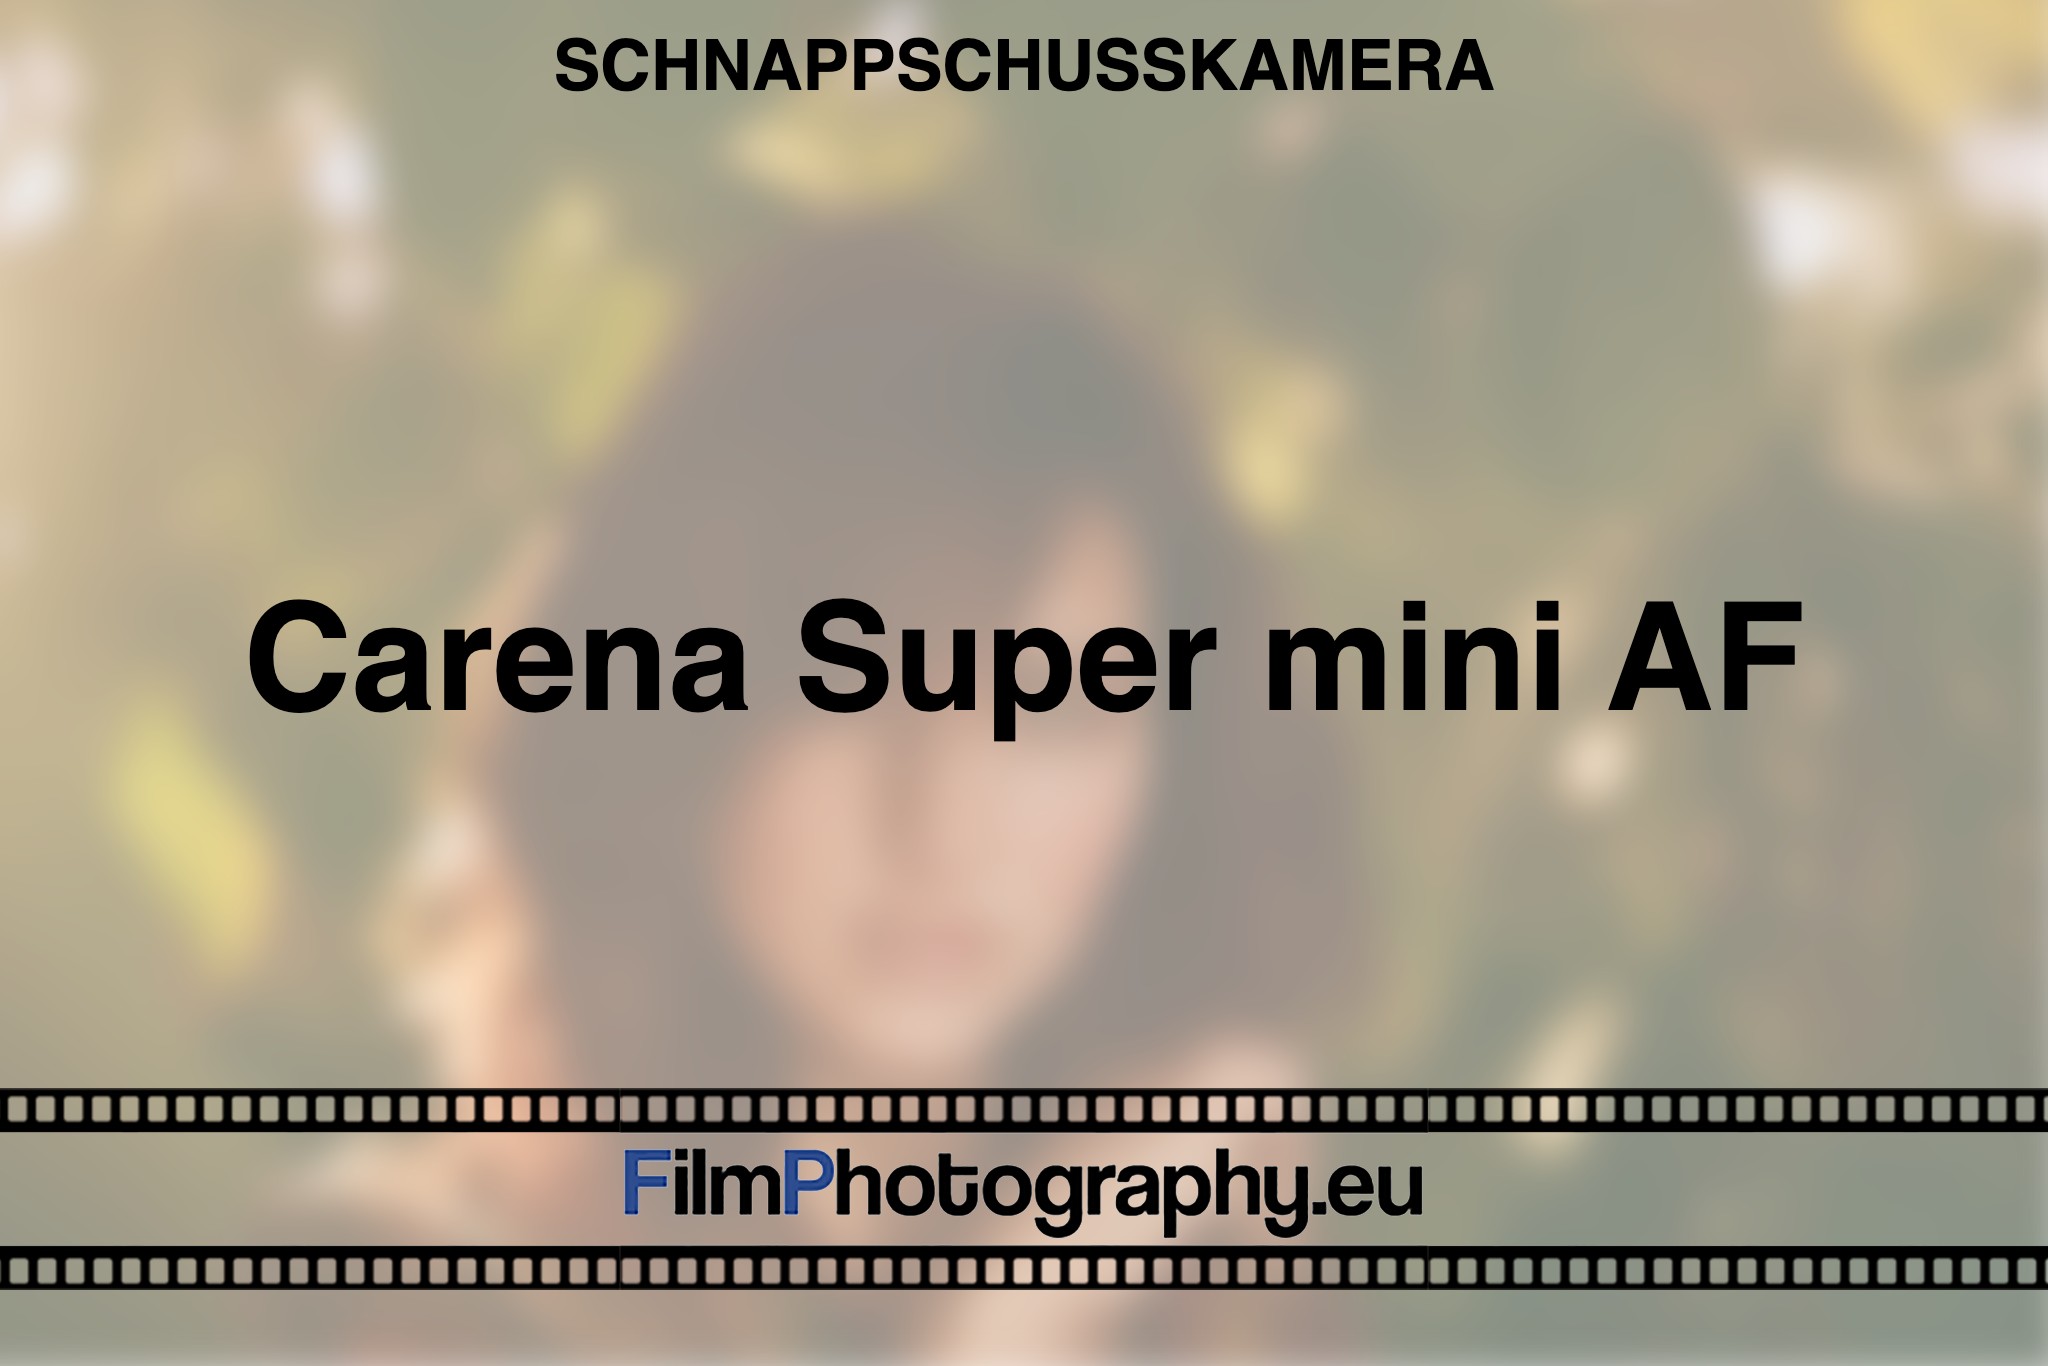 carena-super-mini-af-schnappschusskamera-bnv